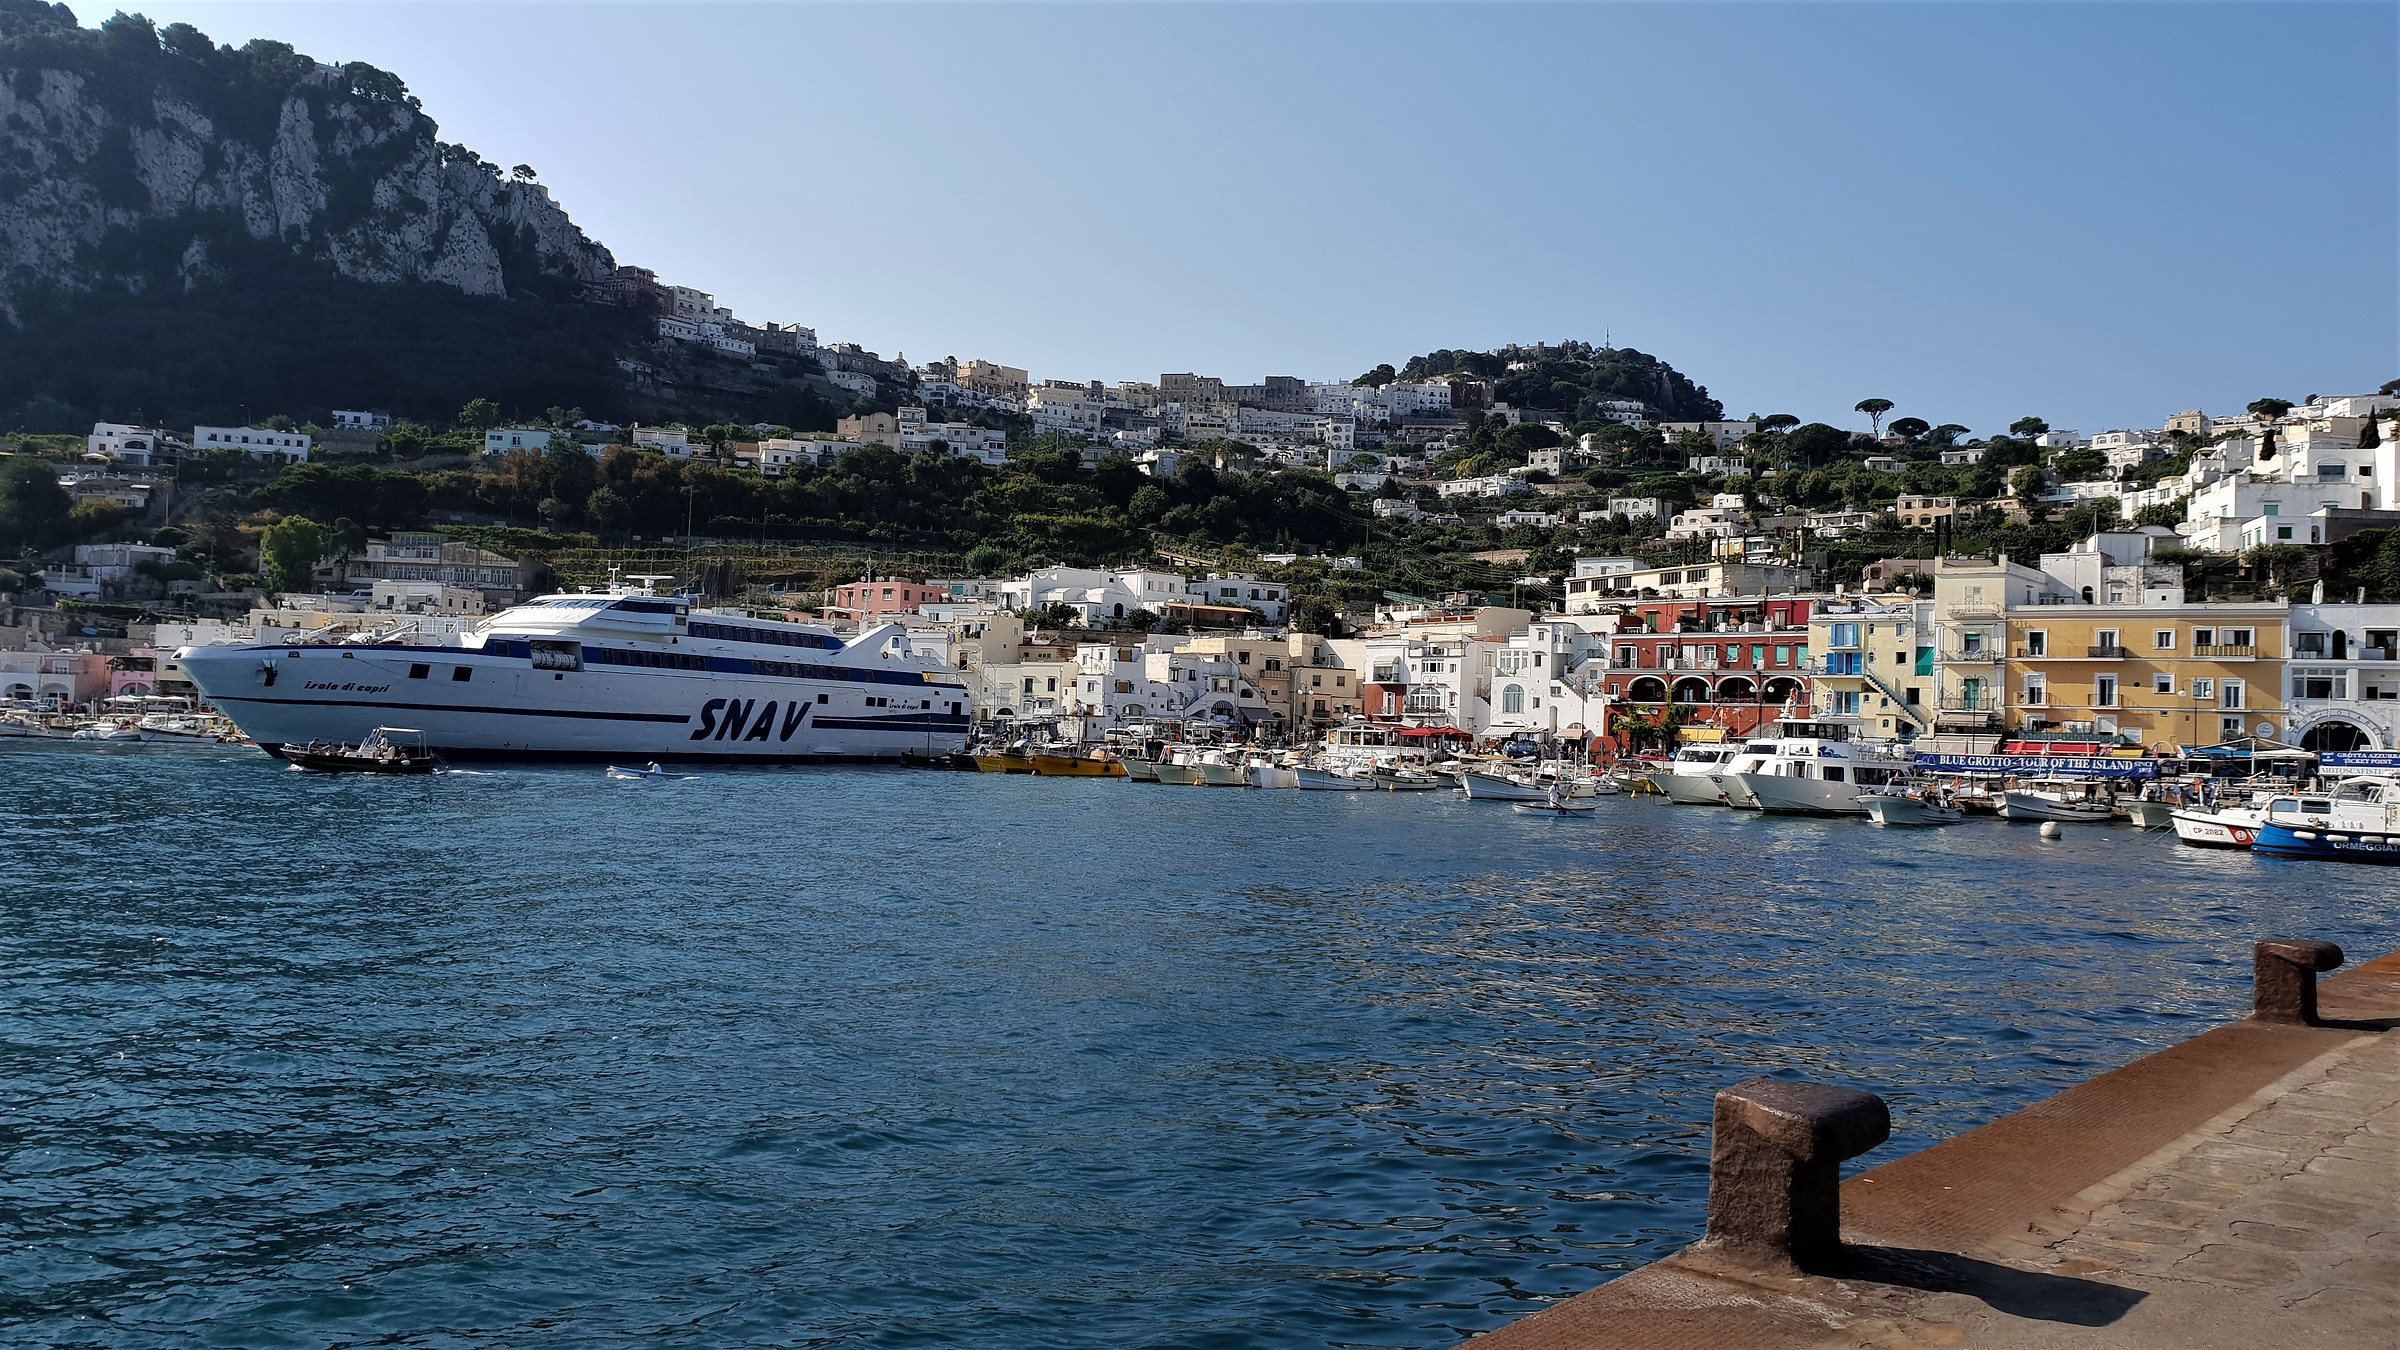 Arrival in Capri...